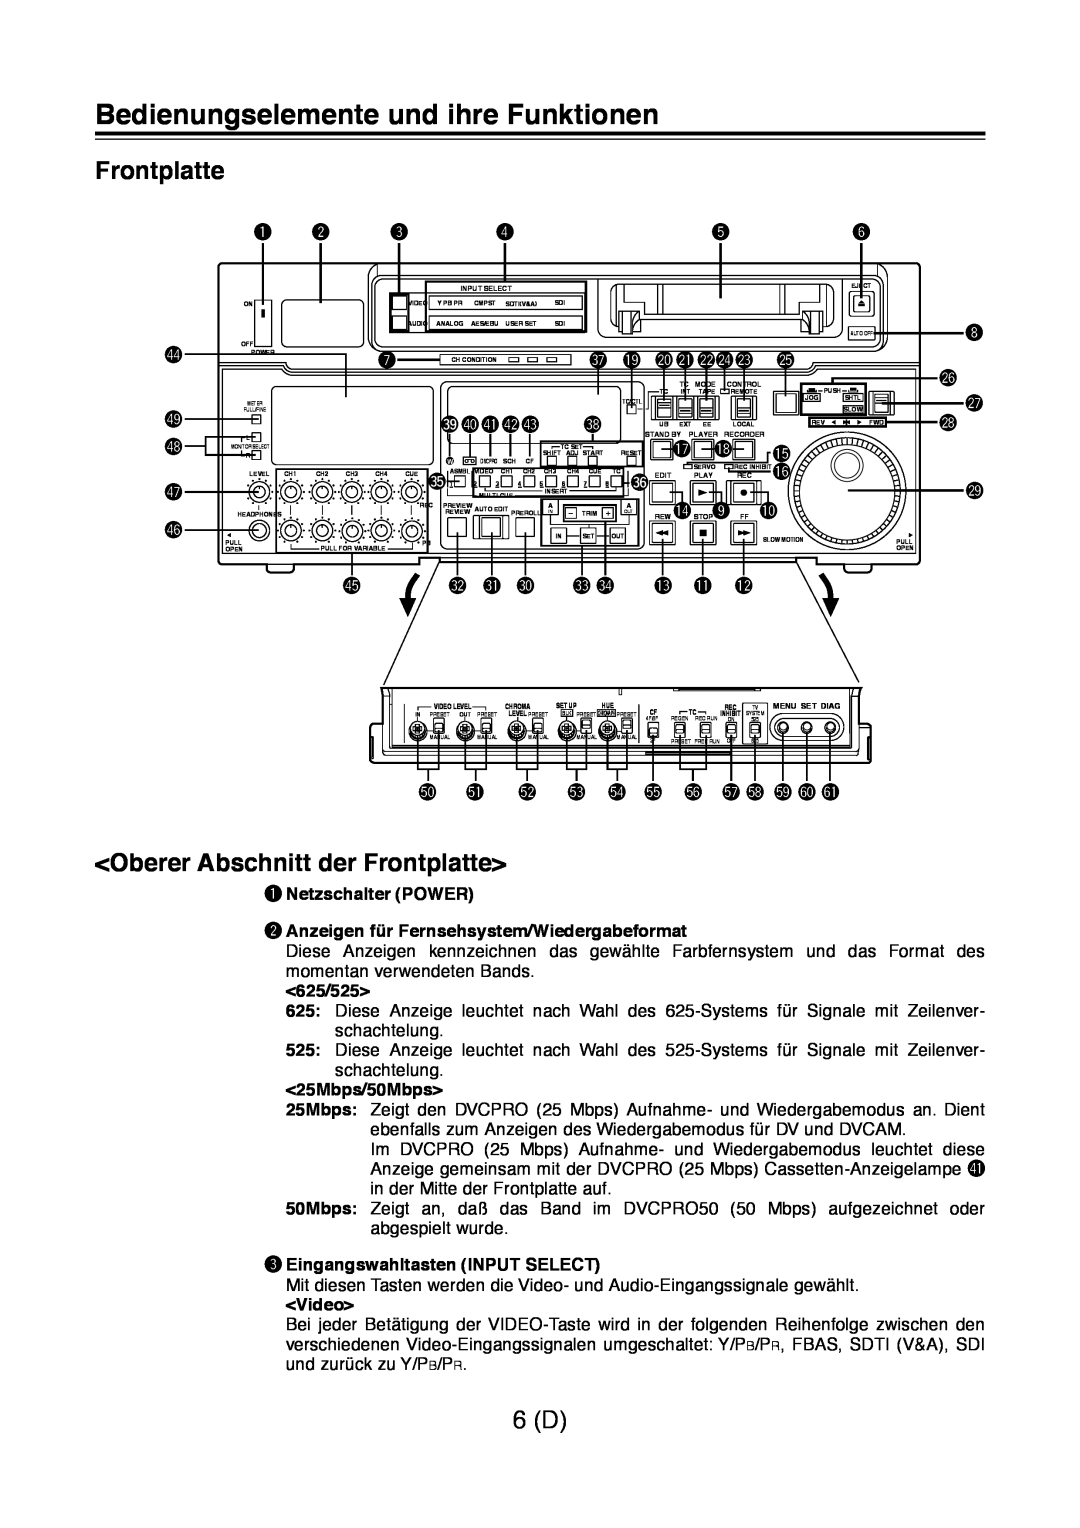 Panasonic AJ-D960 Bedienungselemente und ihre Funktionen, Oberer Abschnitt der Frontplatte, 625/525, 25Mbps/50Mbps 